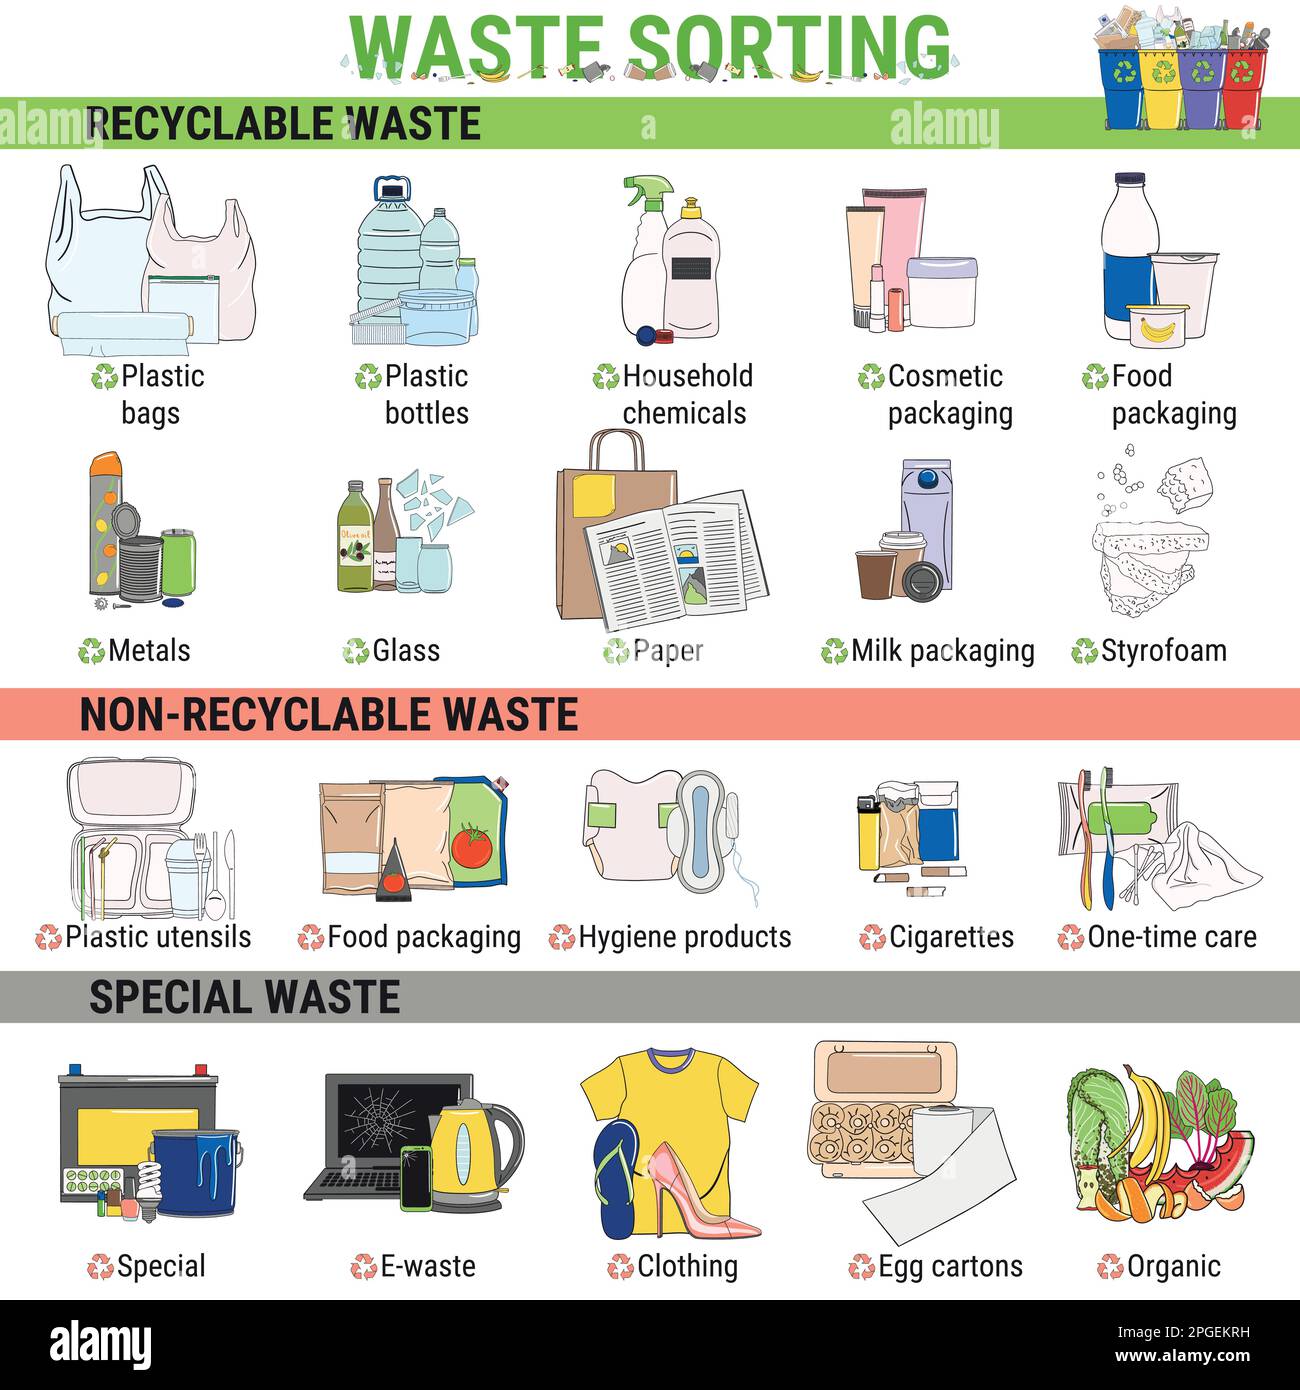 Infografik zum Thema Abfall. Infografiken zum Sortieren von Müll, zur Trennung und zum Recycling. Recyceln Sie Abfalleimer und verschiedene Arten von Müll. Müllverschmutzung. Schrott Stock Vektor